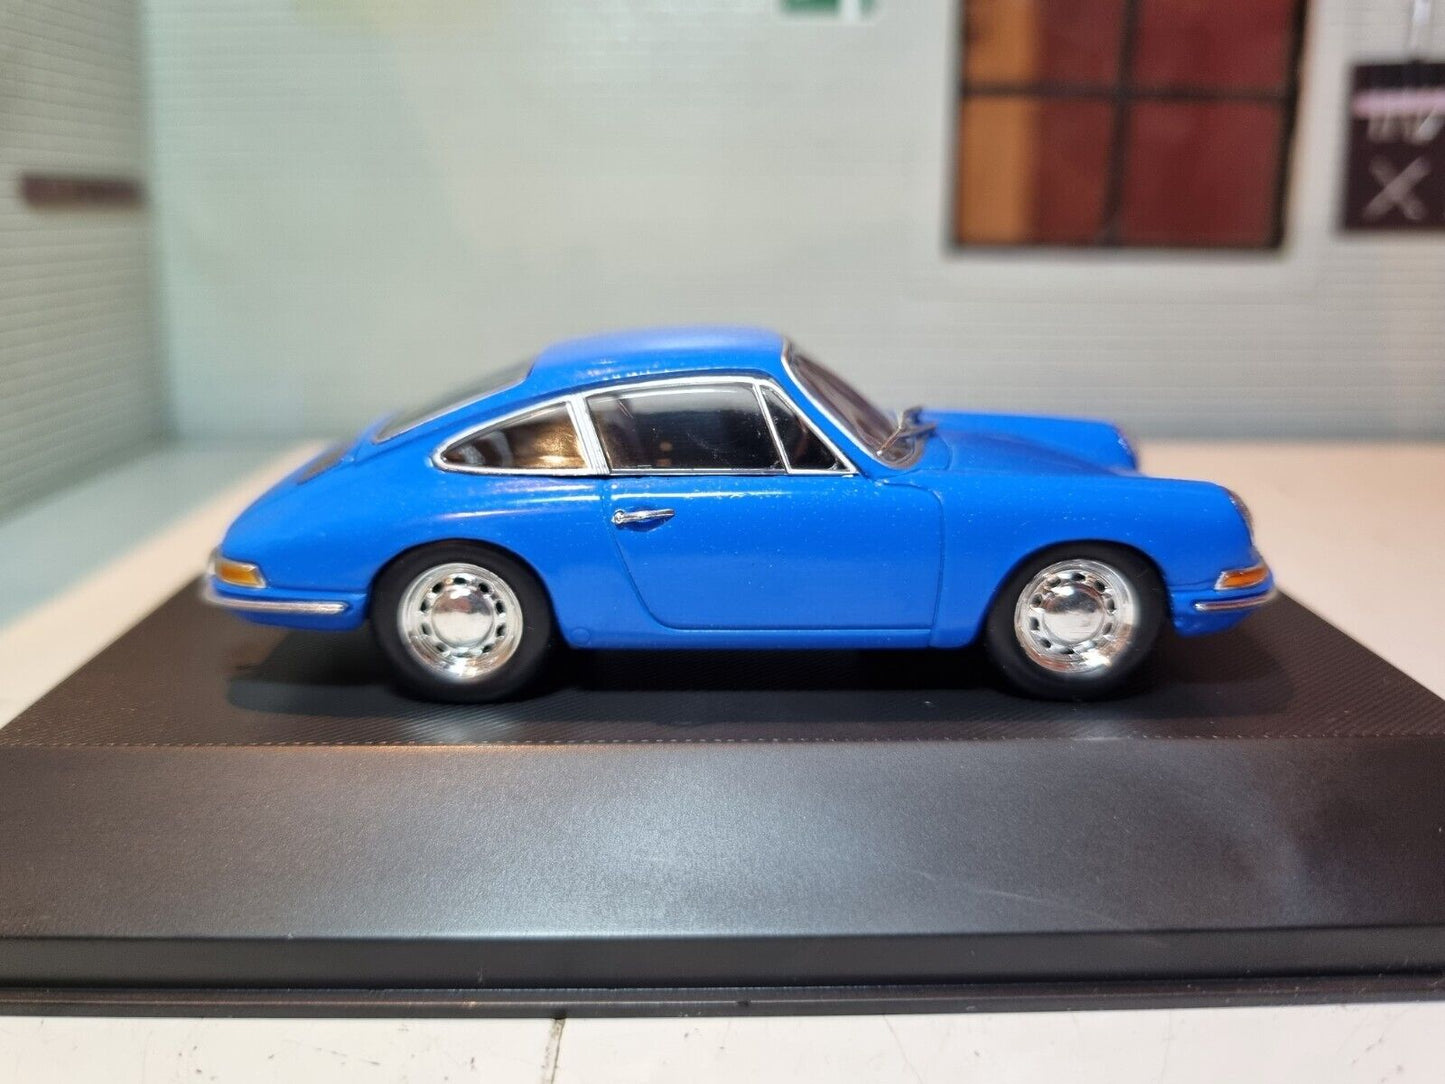 Porsche 1964 901 7114001 Atlas 1:43